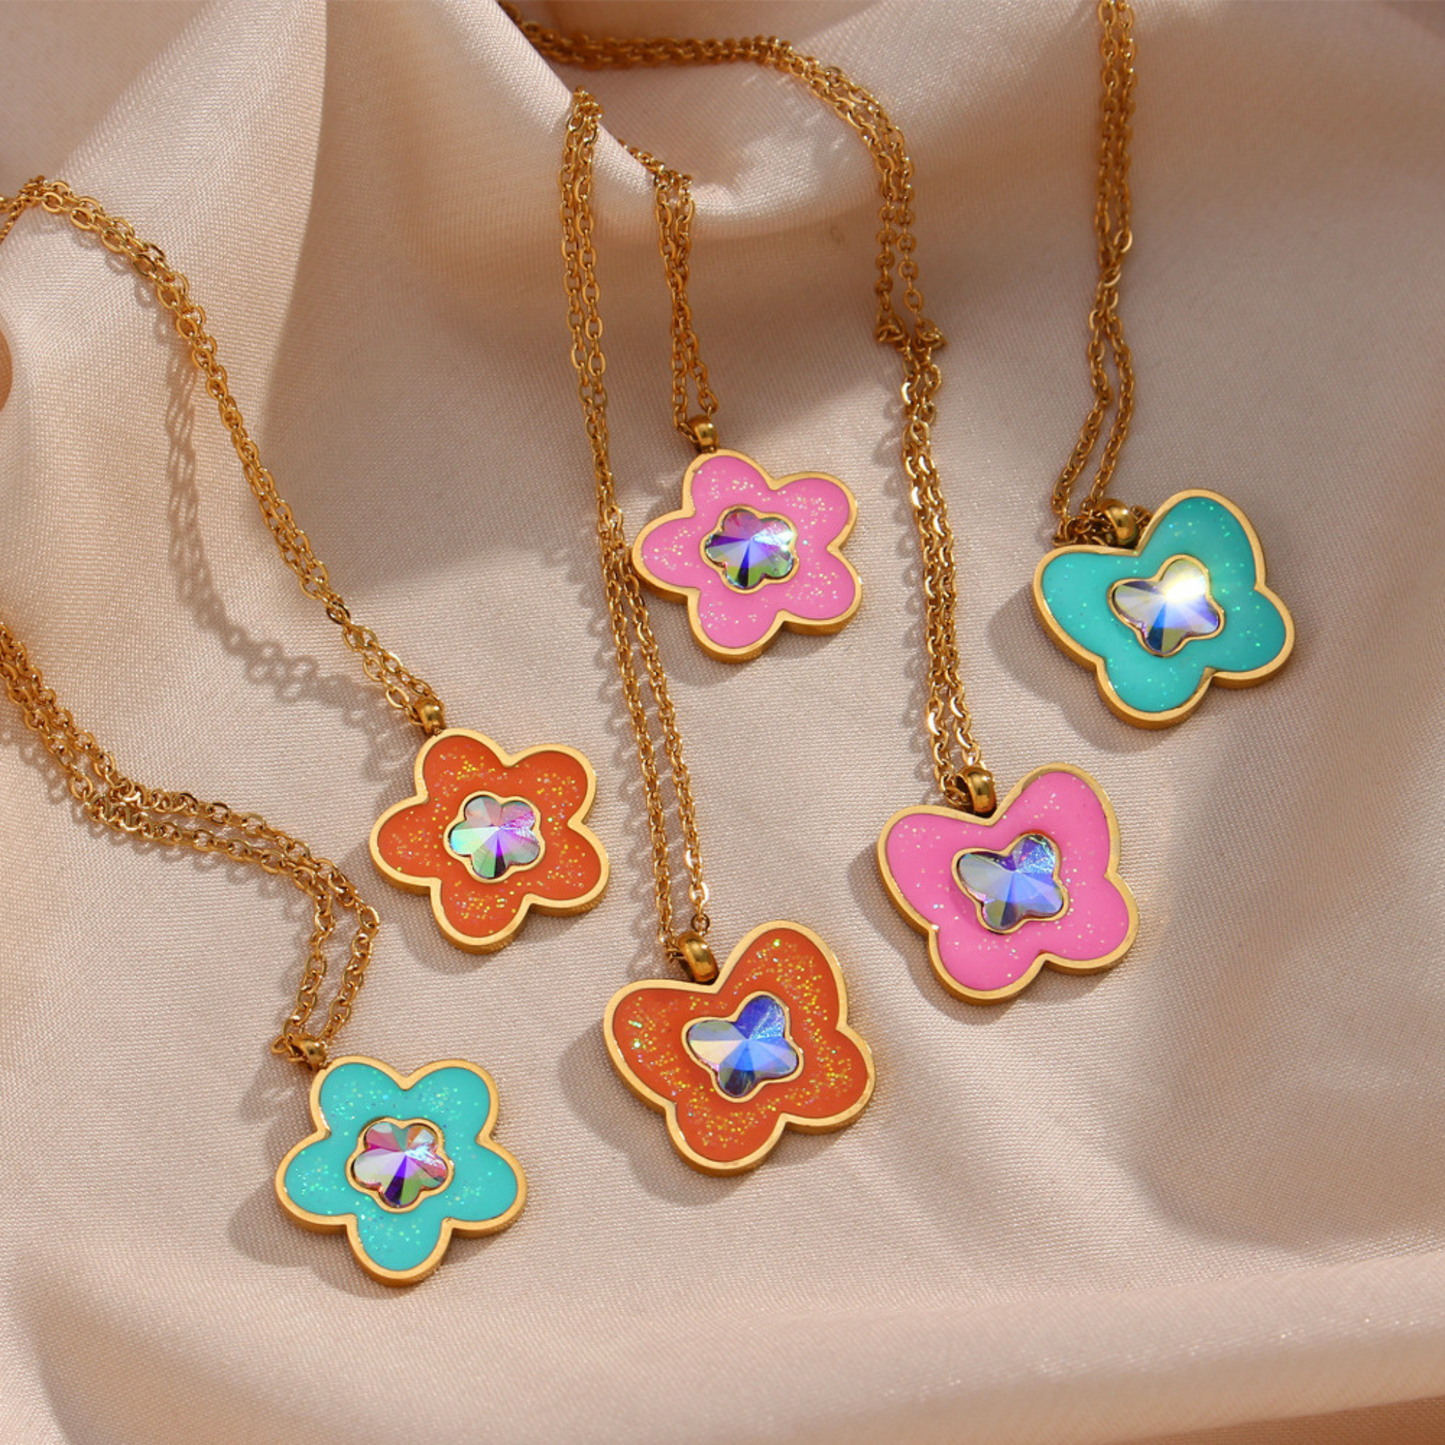 Vintage Colorful Flower Pendant Necklaces for Women